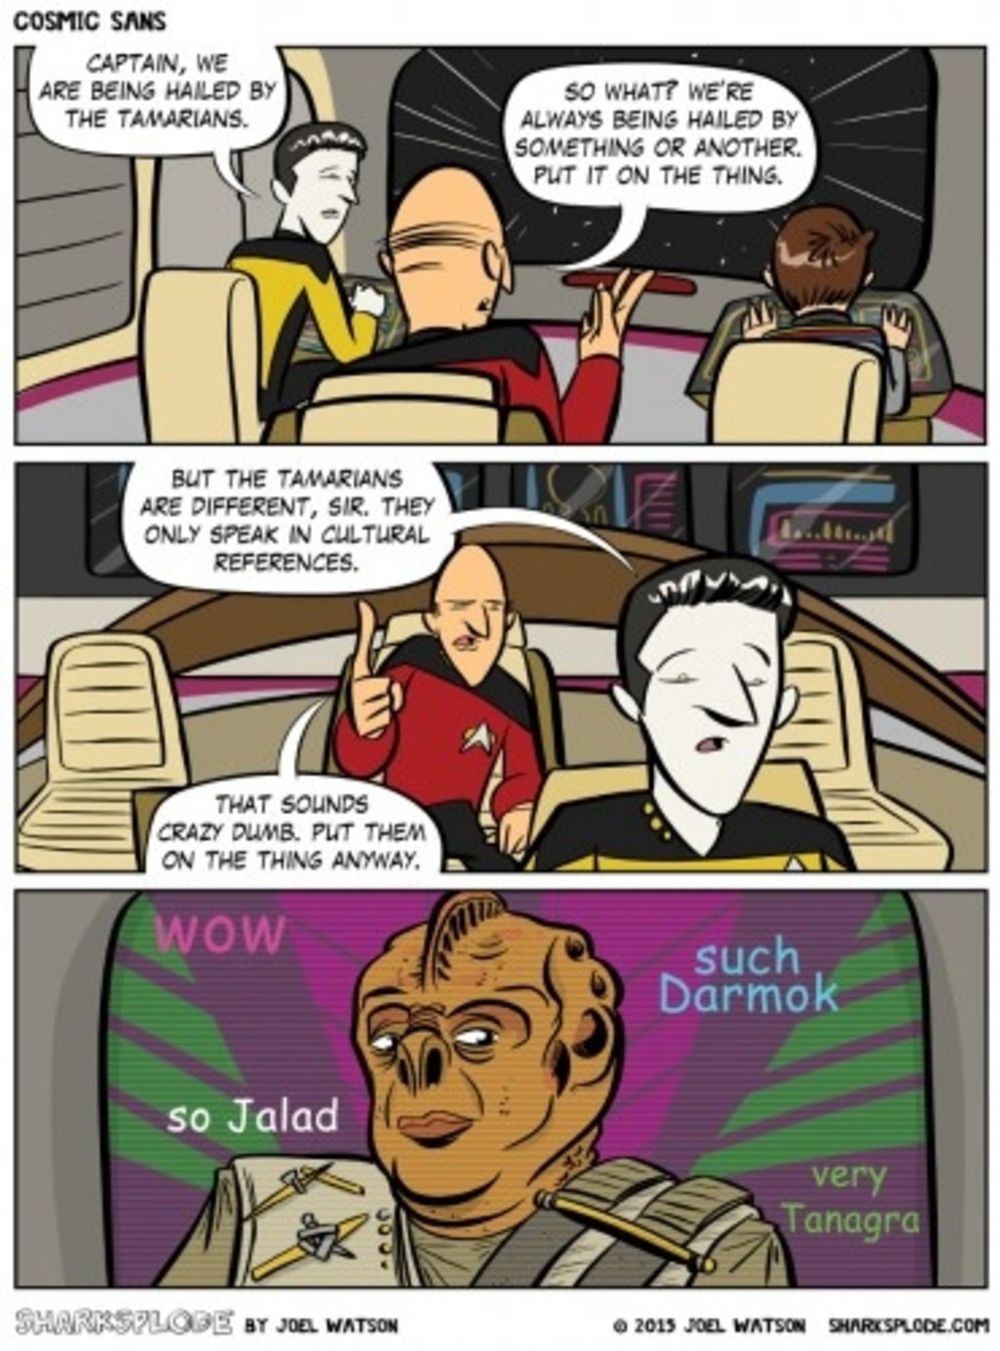 24 Hilarious Star Trek Comics That Show It Makes No Sense